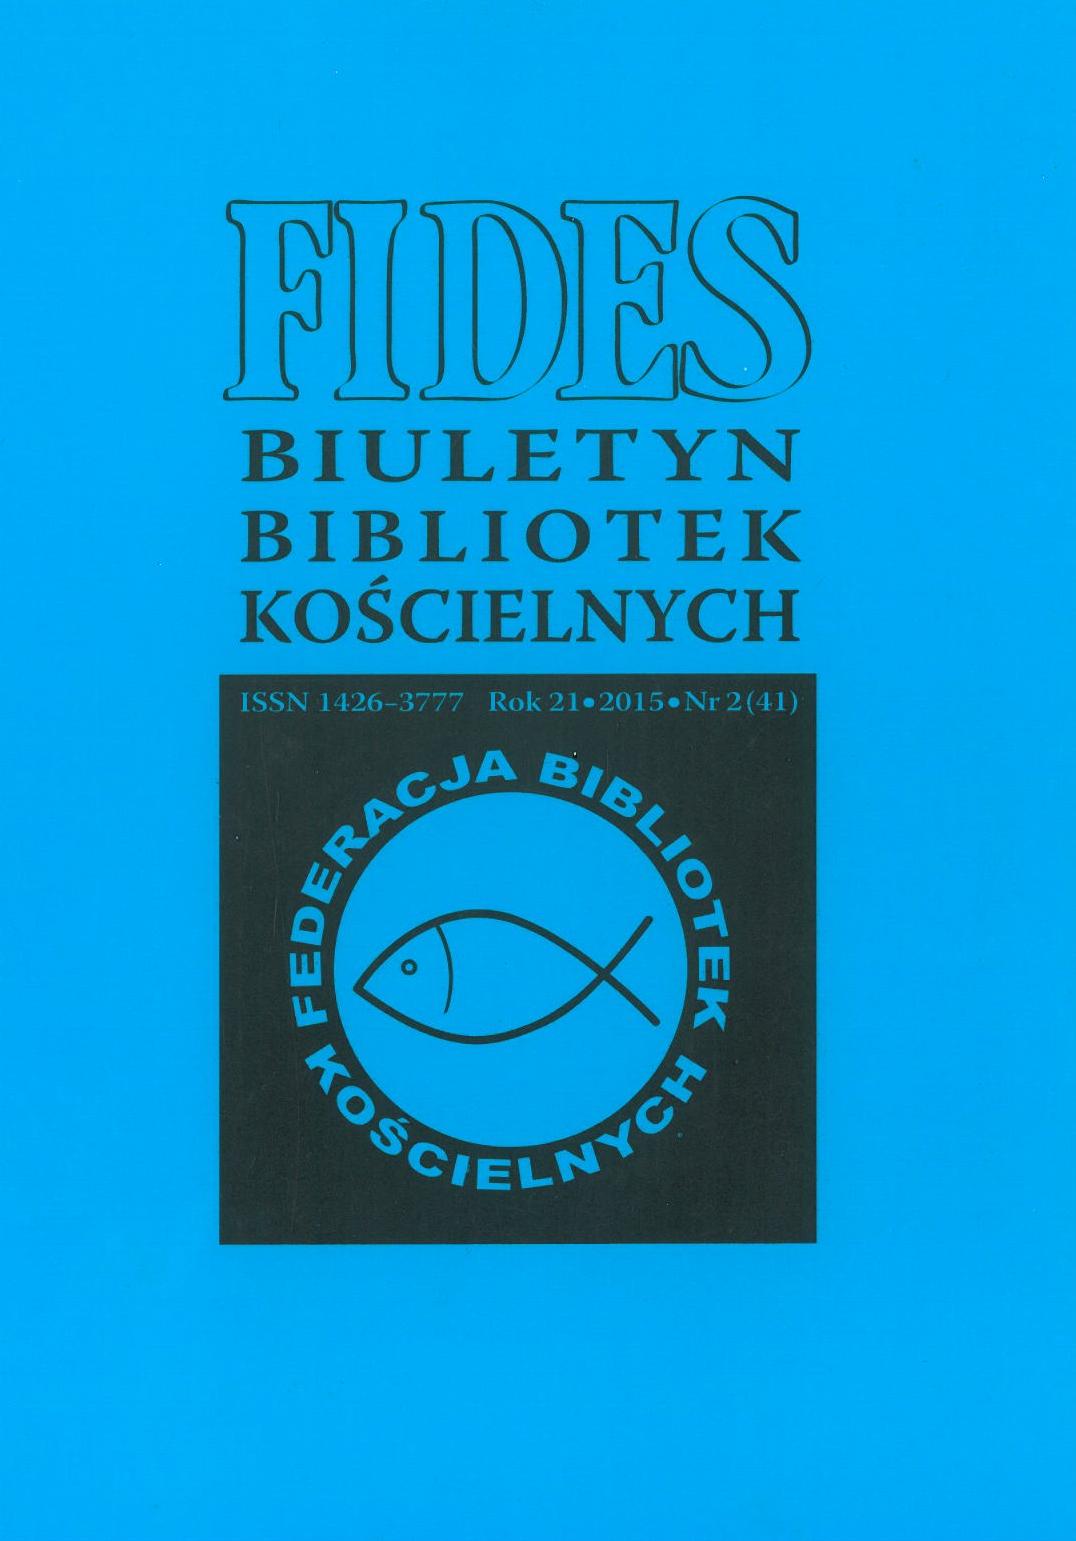 Fides. Biuletyn Bibliotek Kościelnych